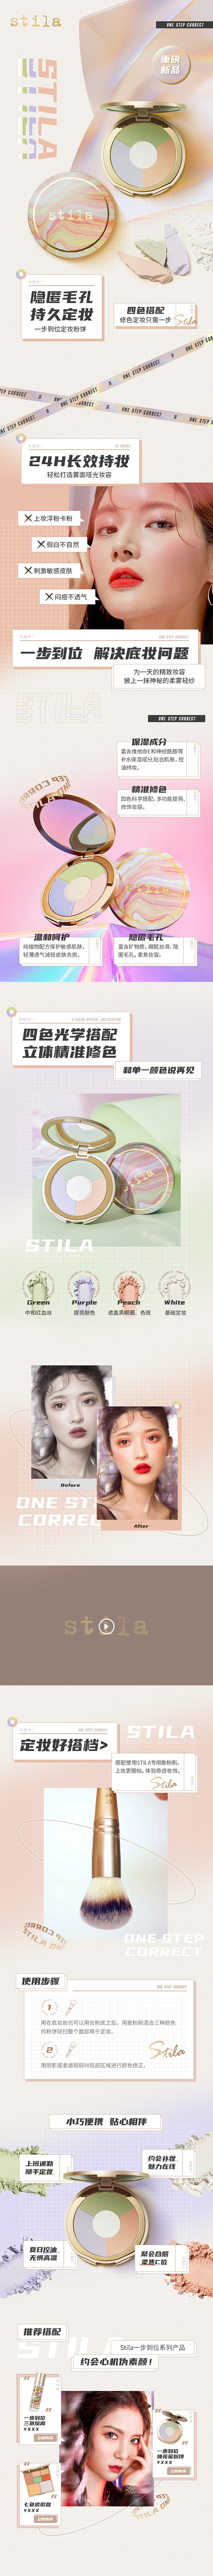 Stila-定妆粉饼-spp